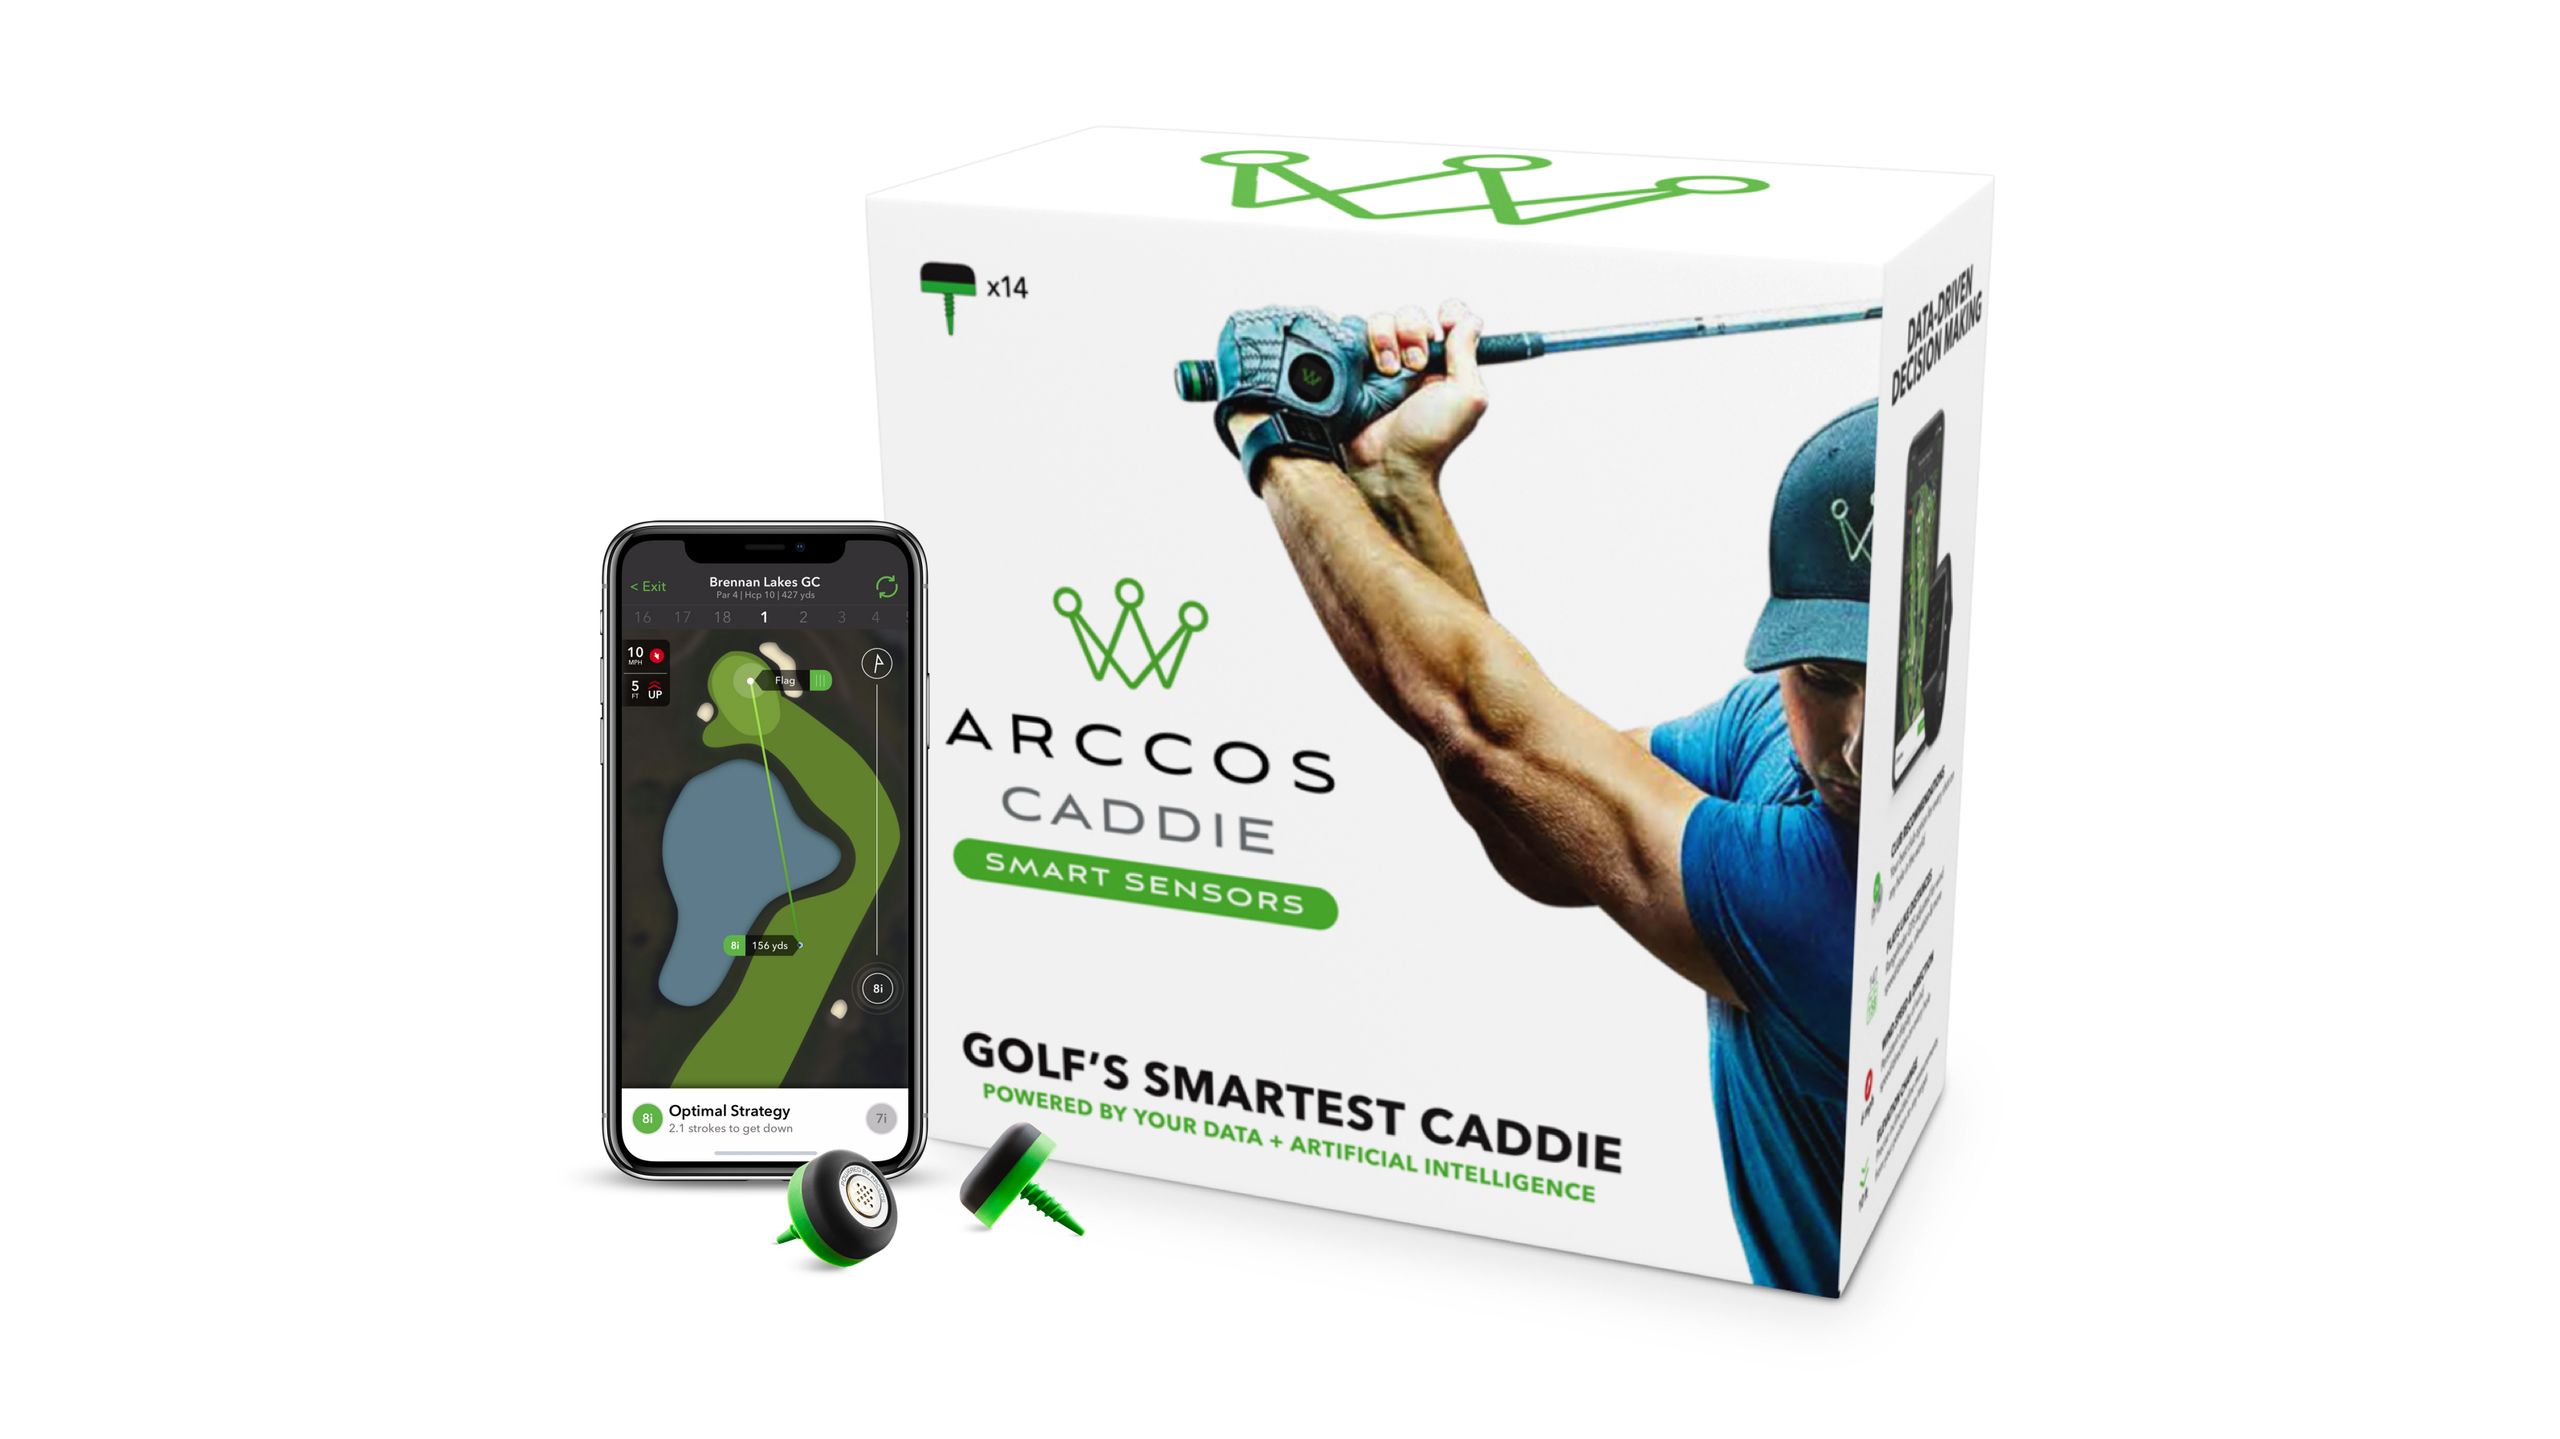  Beste Geschenke für Golfer: Arccos Caddie Intelligente Sensoren